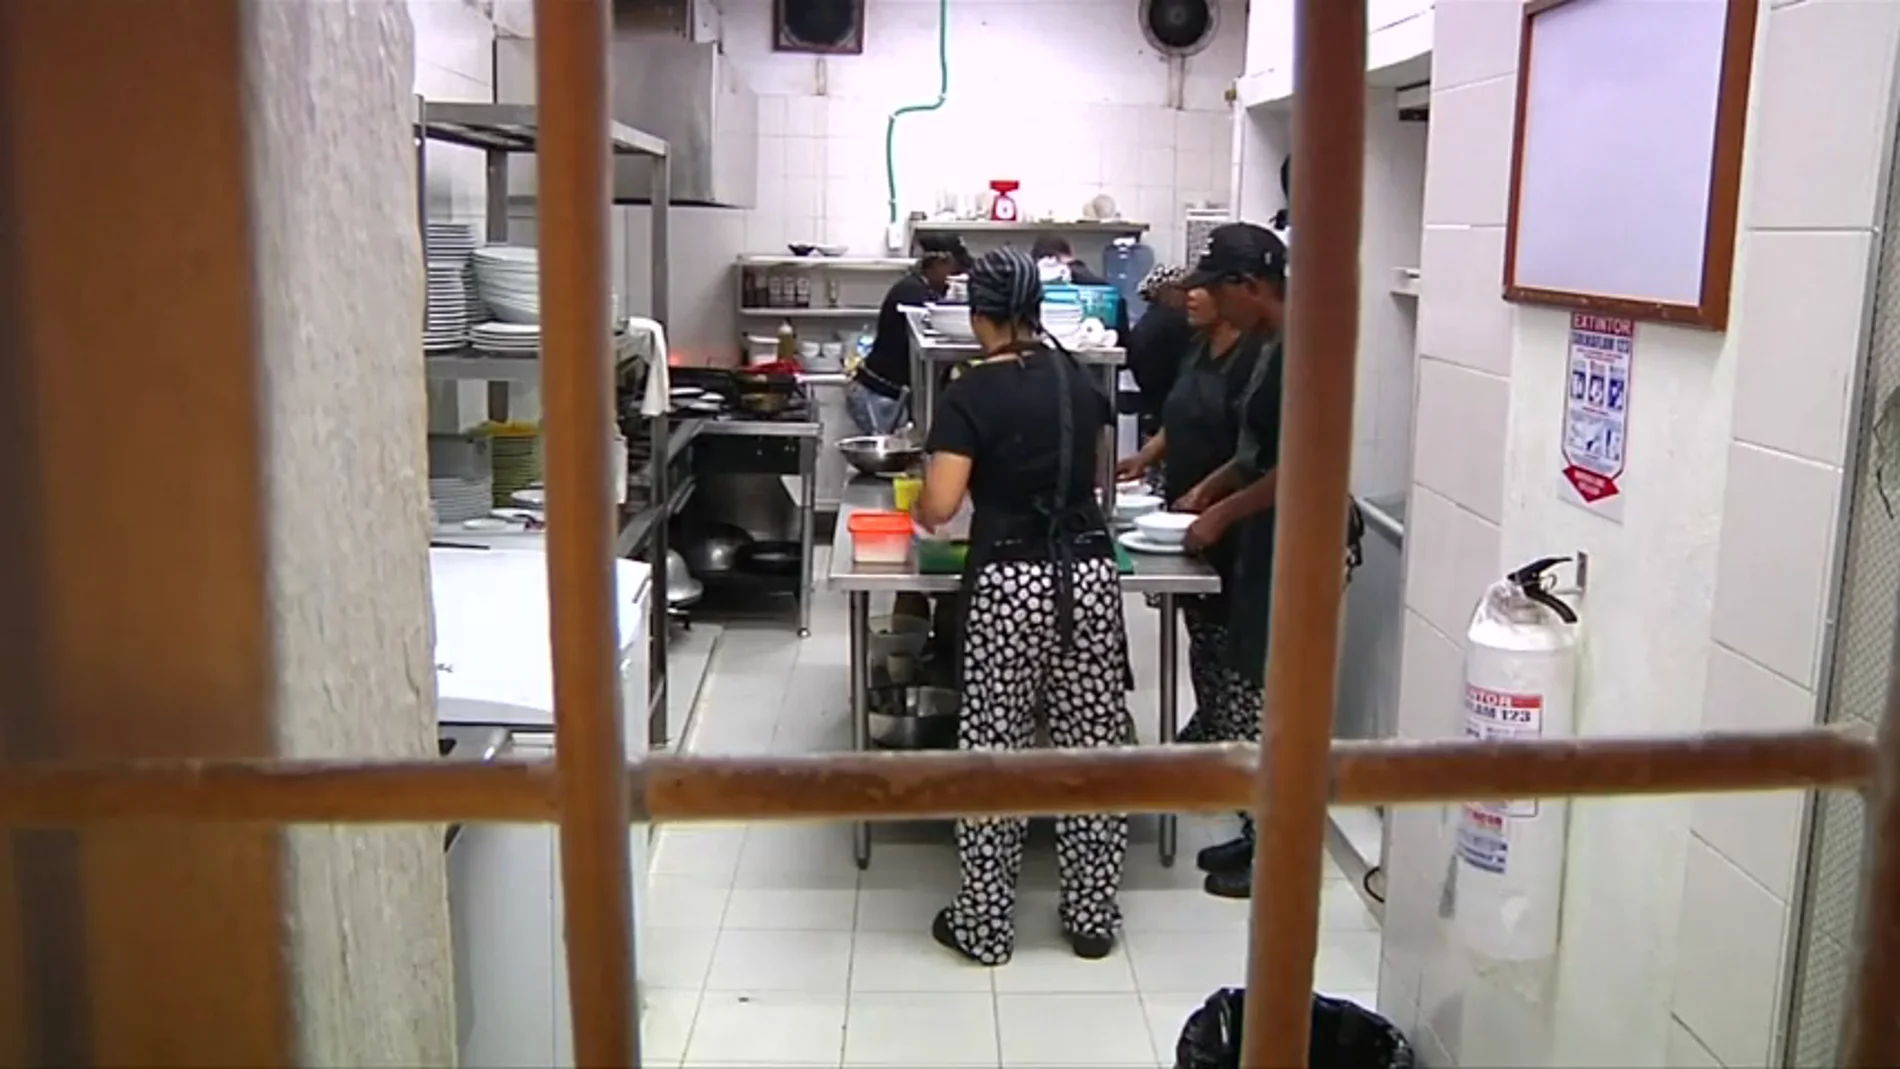  Una cárcel de Colombia abre un restaurante dirigido por 20 reclusas 